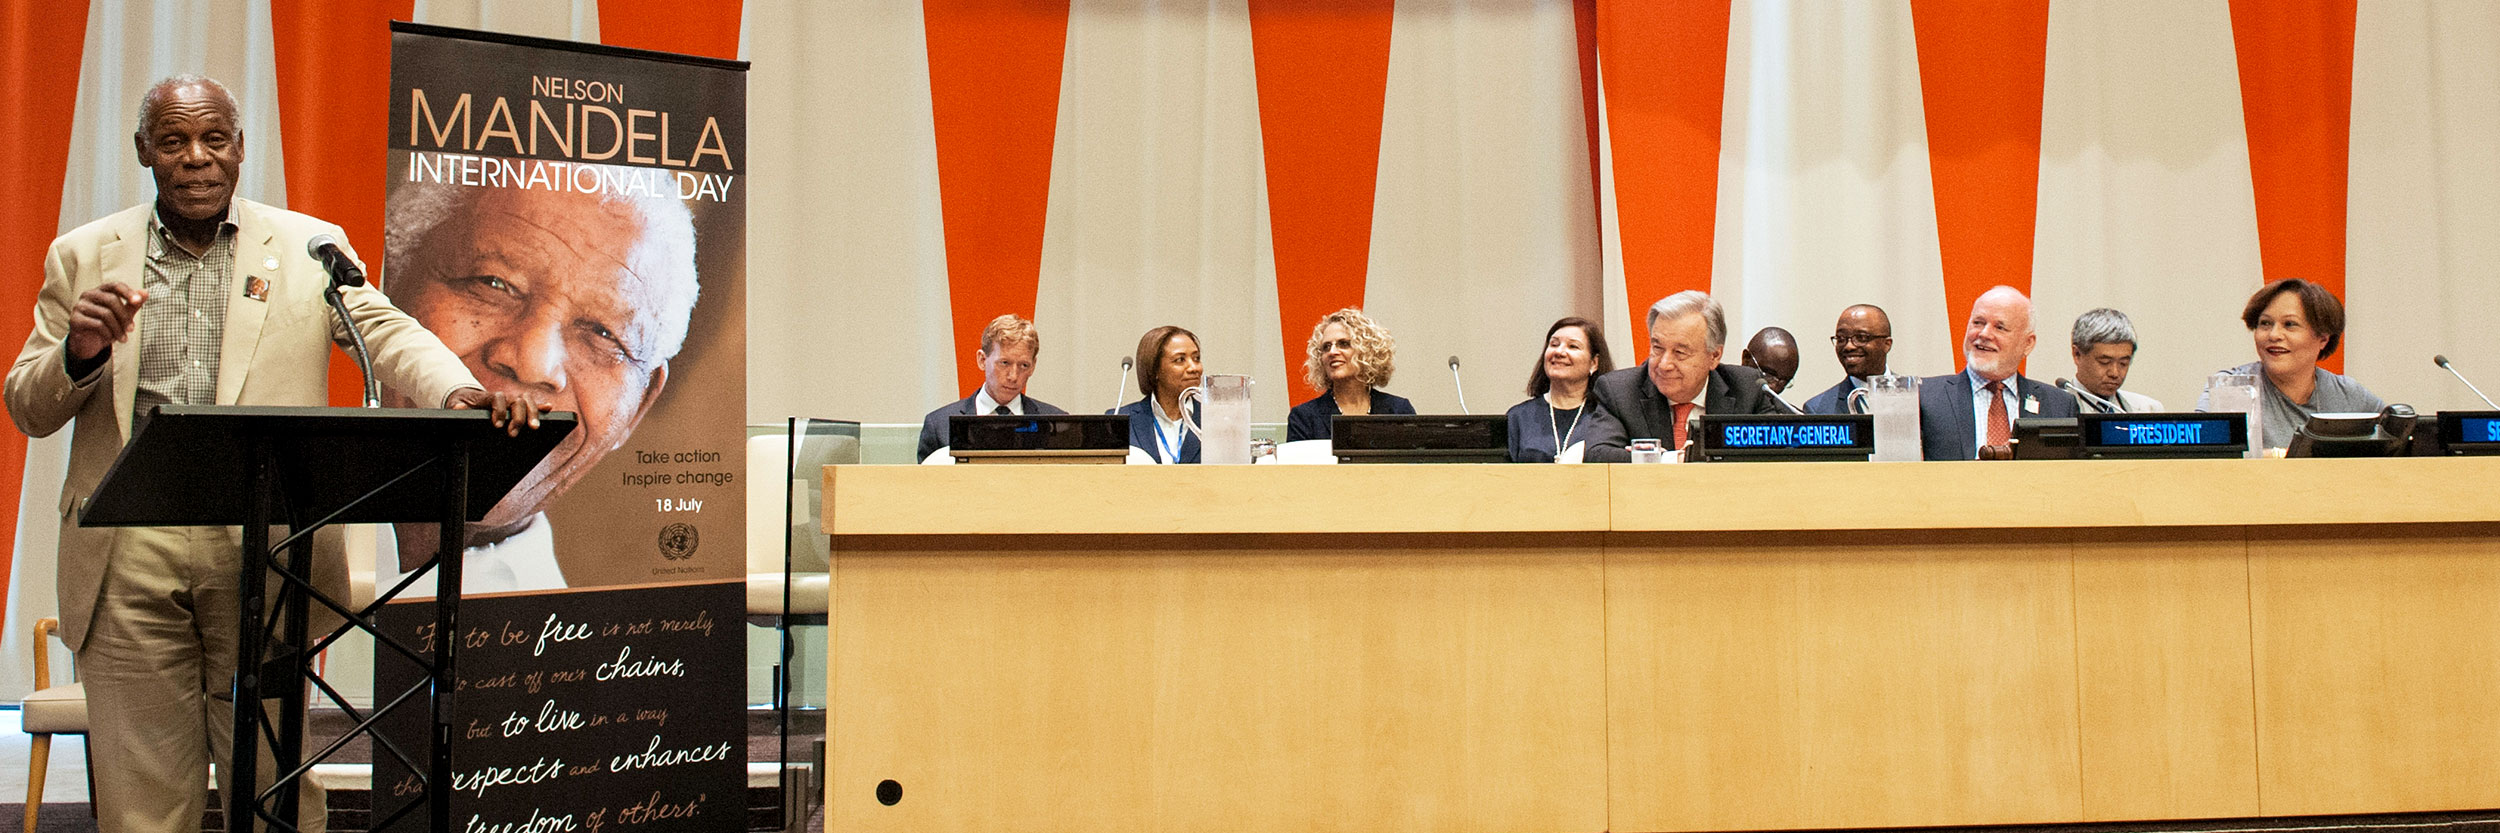 演员、导演兼政治活动家丹尼•格洛弗在联合国大会纳尔逊•曼德拉国际日非正式会议上发言。联合国图片/Kim Haughton